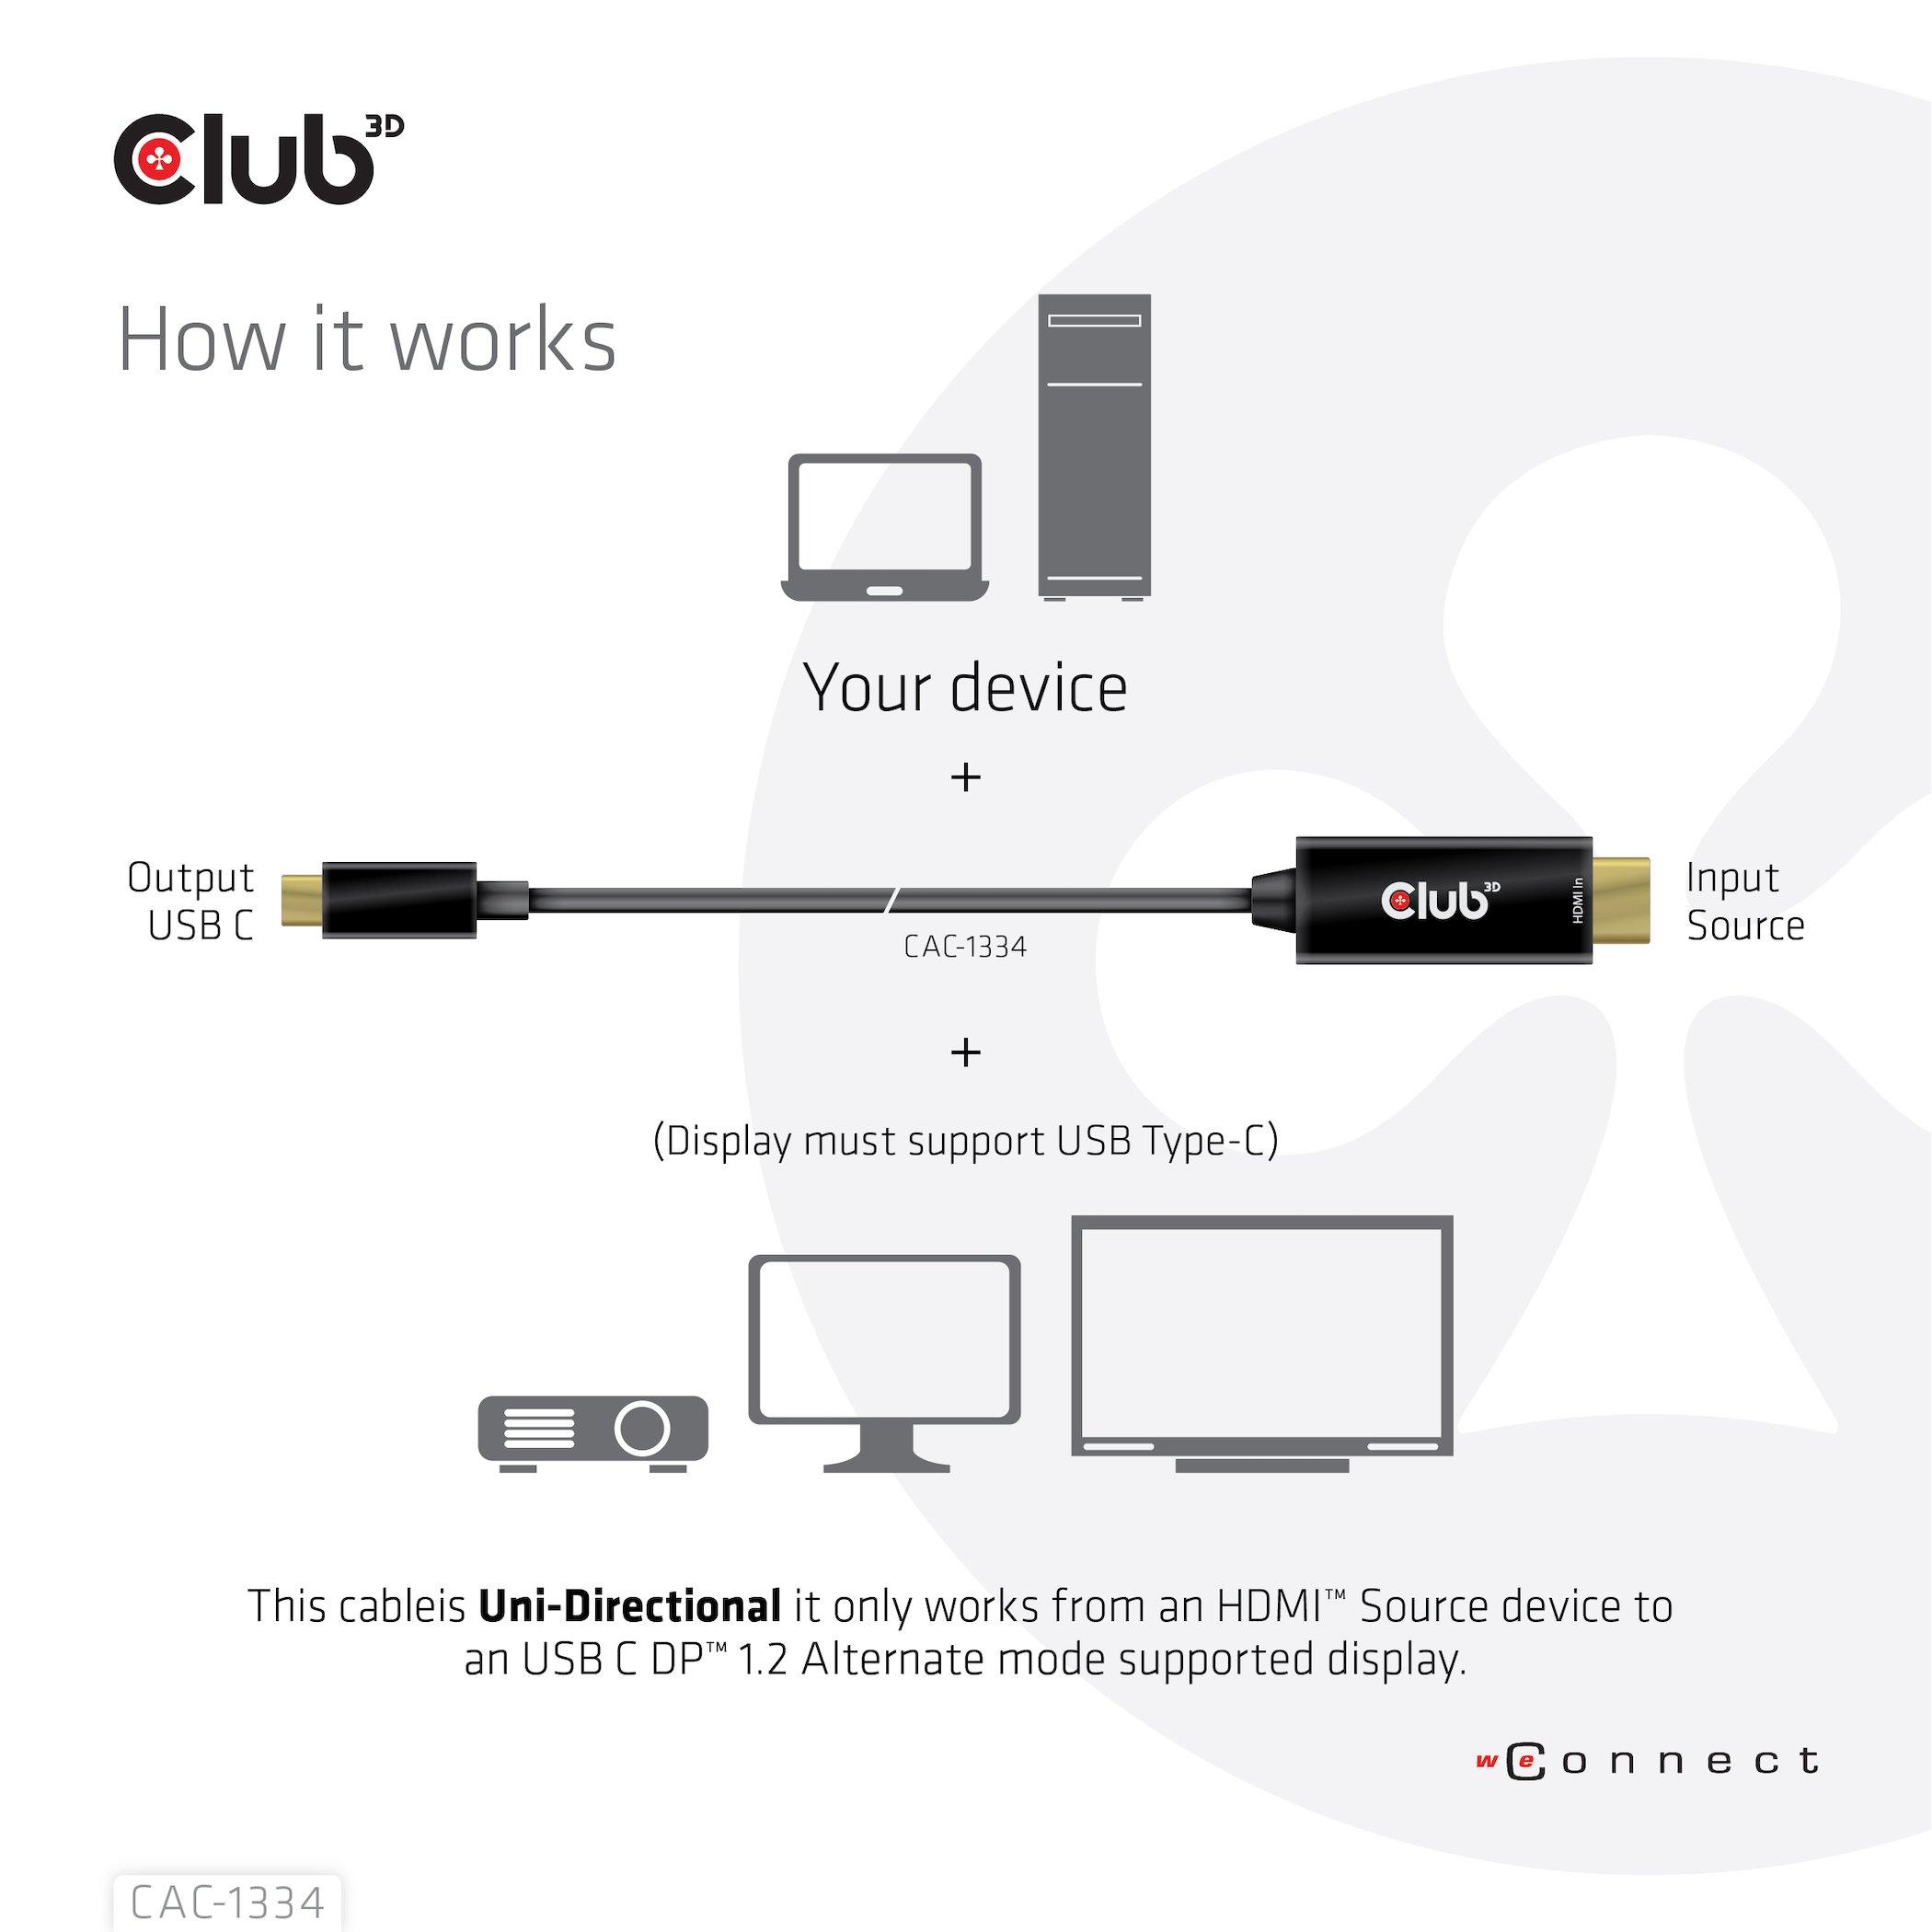 Club3D  CLUB3D CAC-1334 câble vidéo et adaptateur 1,8 m HDMI Type A (Standard) USB Type-C 